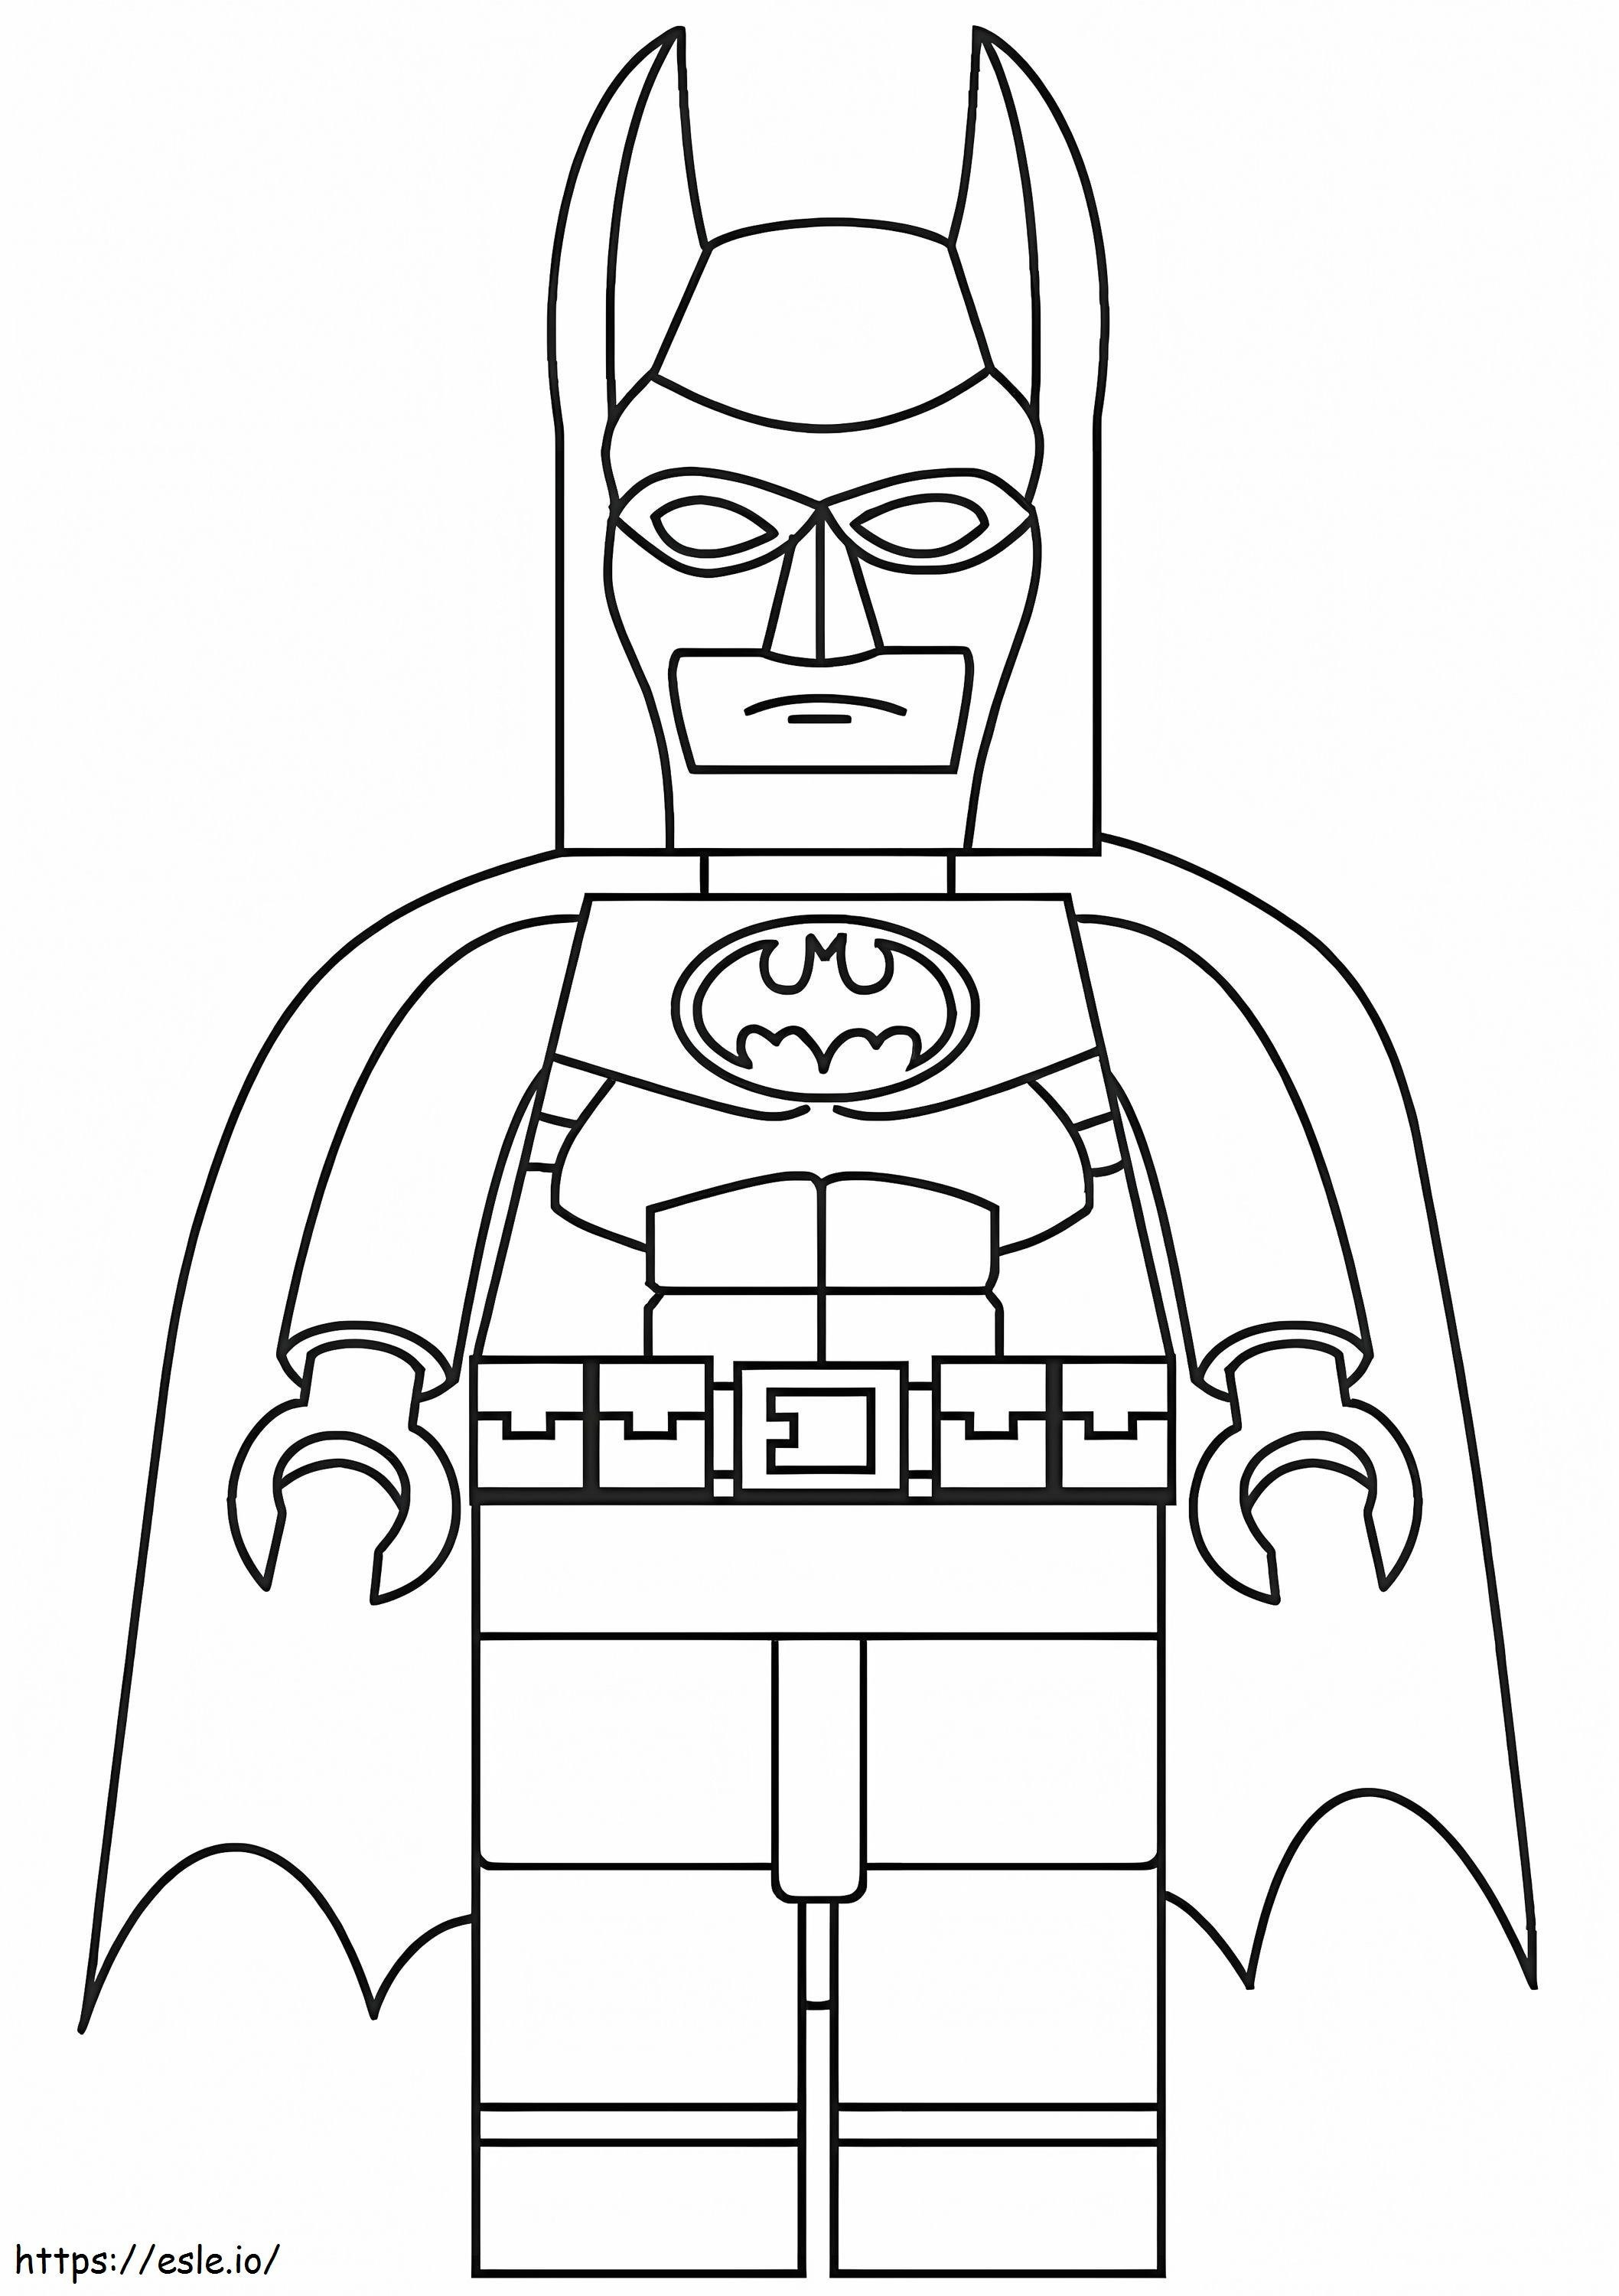 Lego Batman 3 coloring page